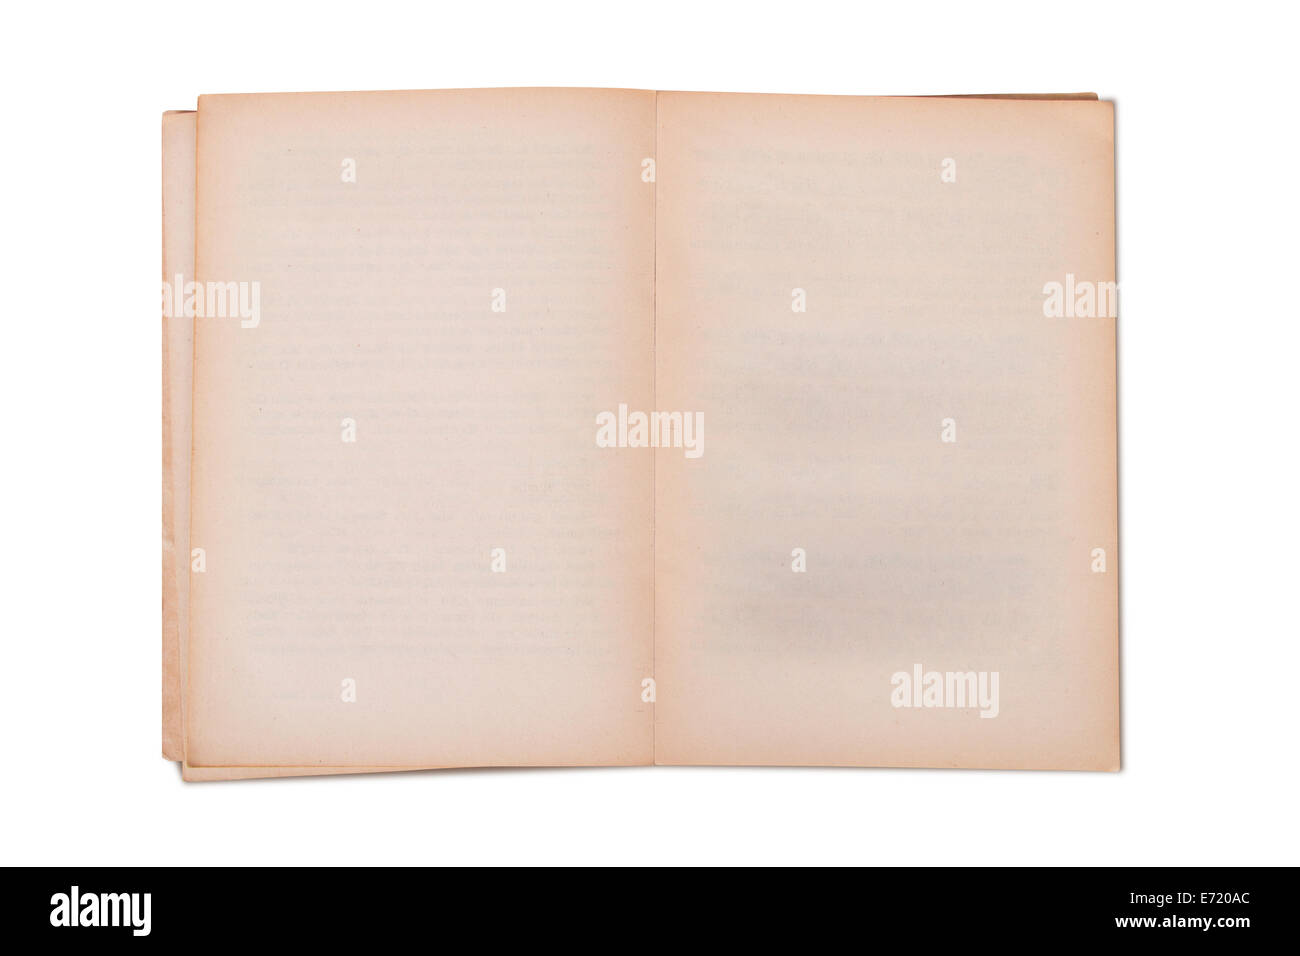 Livre ouvert Banque d'images détourées - Page 2 - Alamy